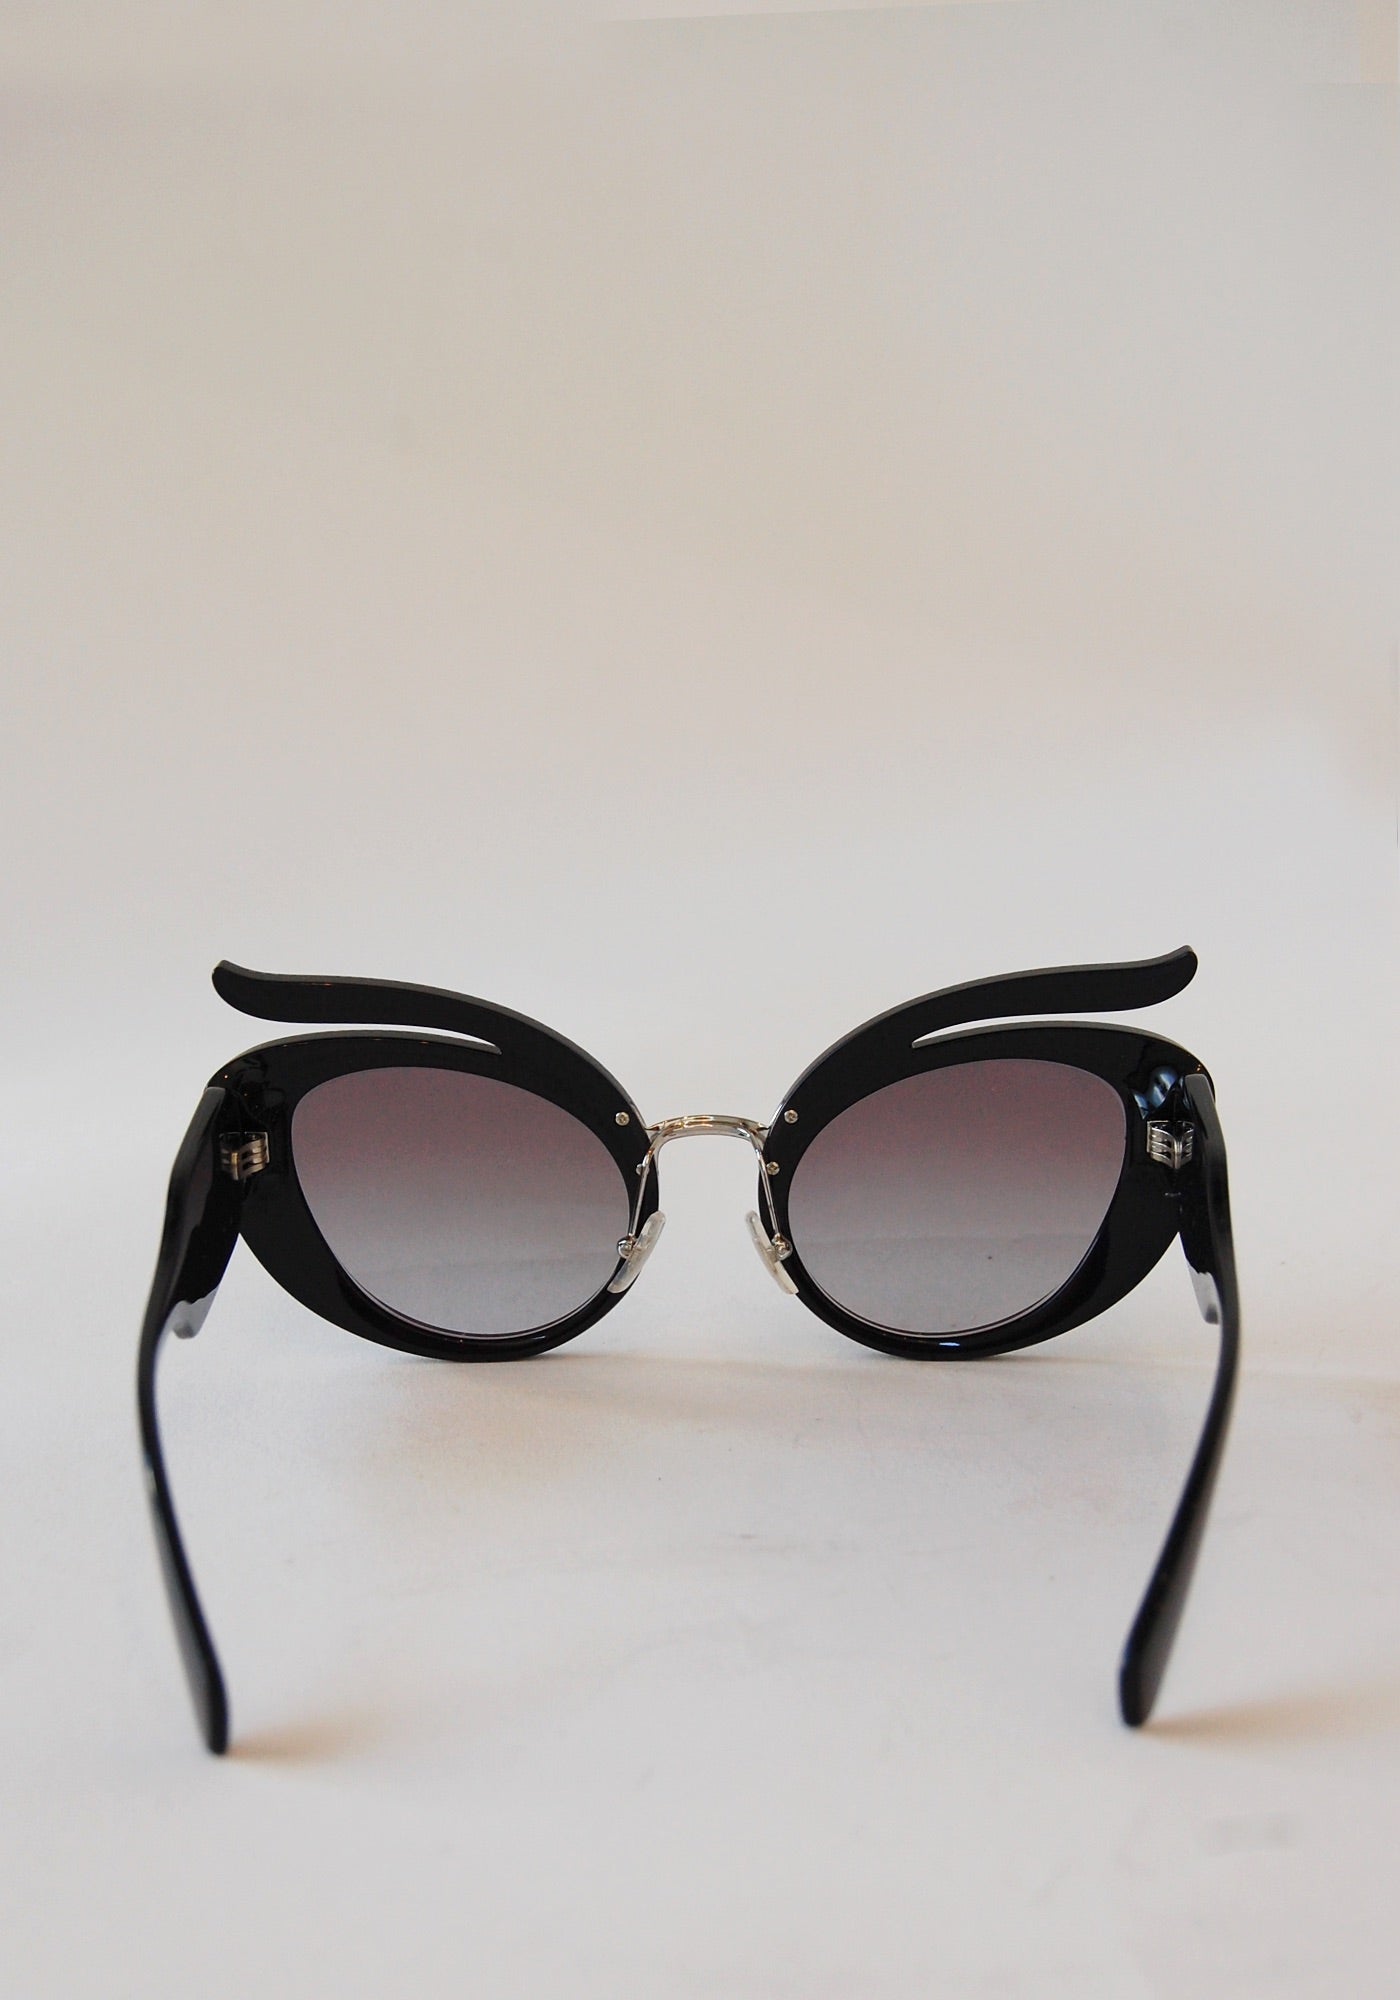 Miu Miu Black Rhinestone Sunglasses